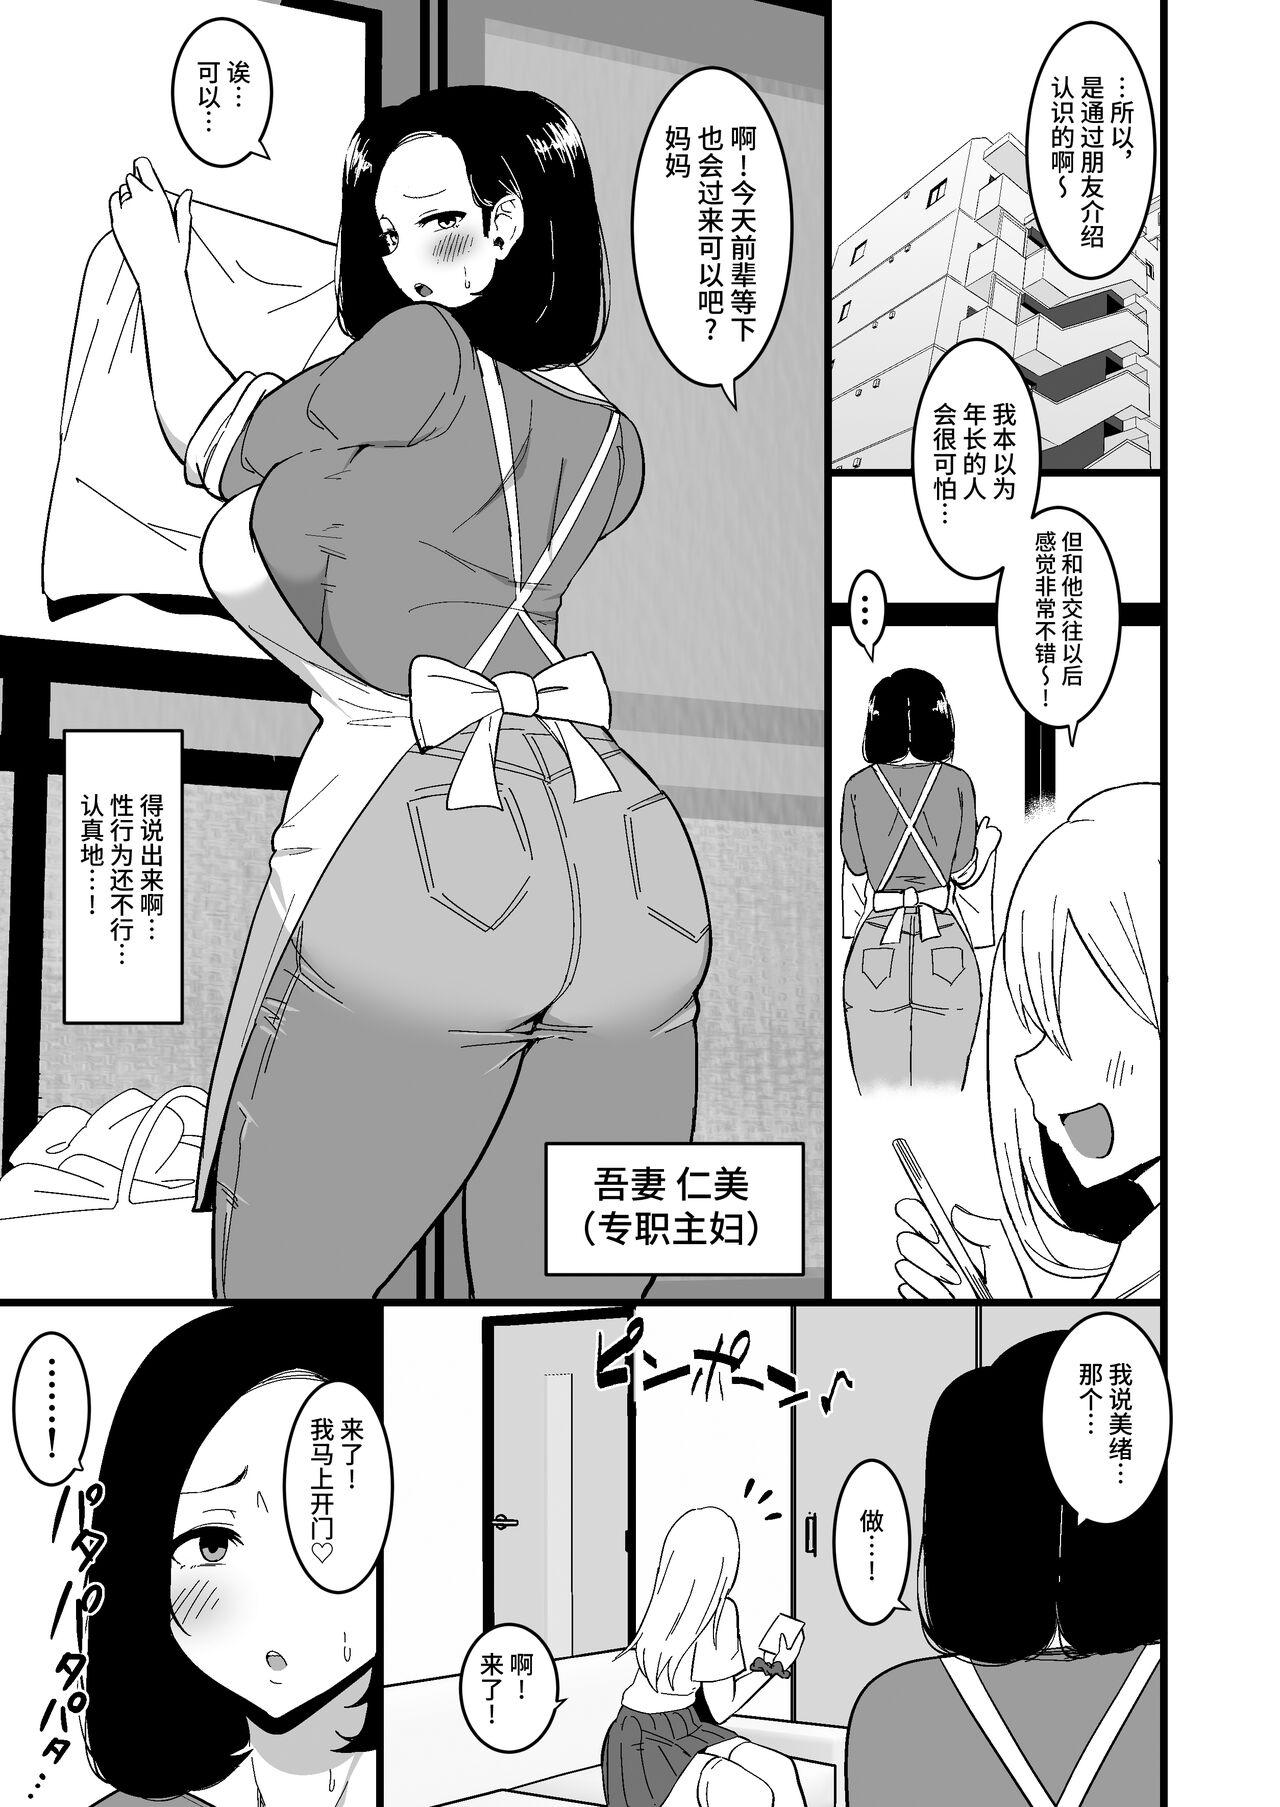 Pounded Musume no Kareshi ni Ochiru Okaa-san. 2 - Original 18yo - Page 4